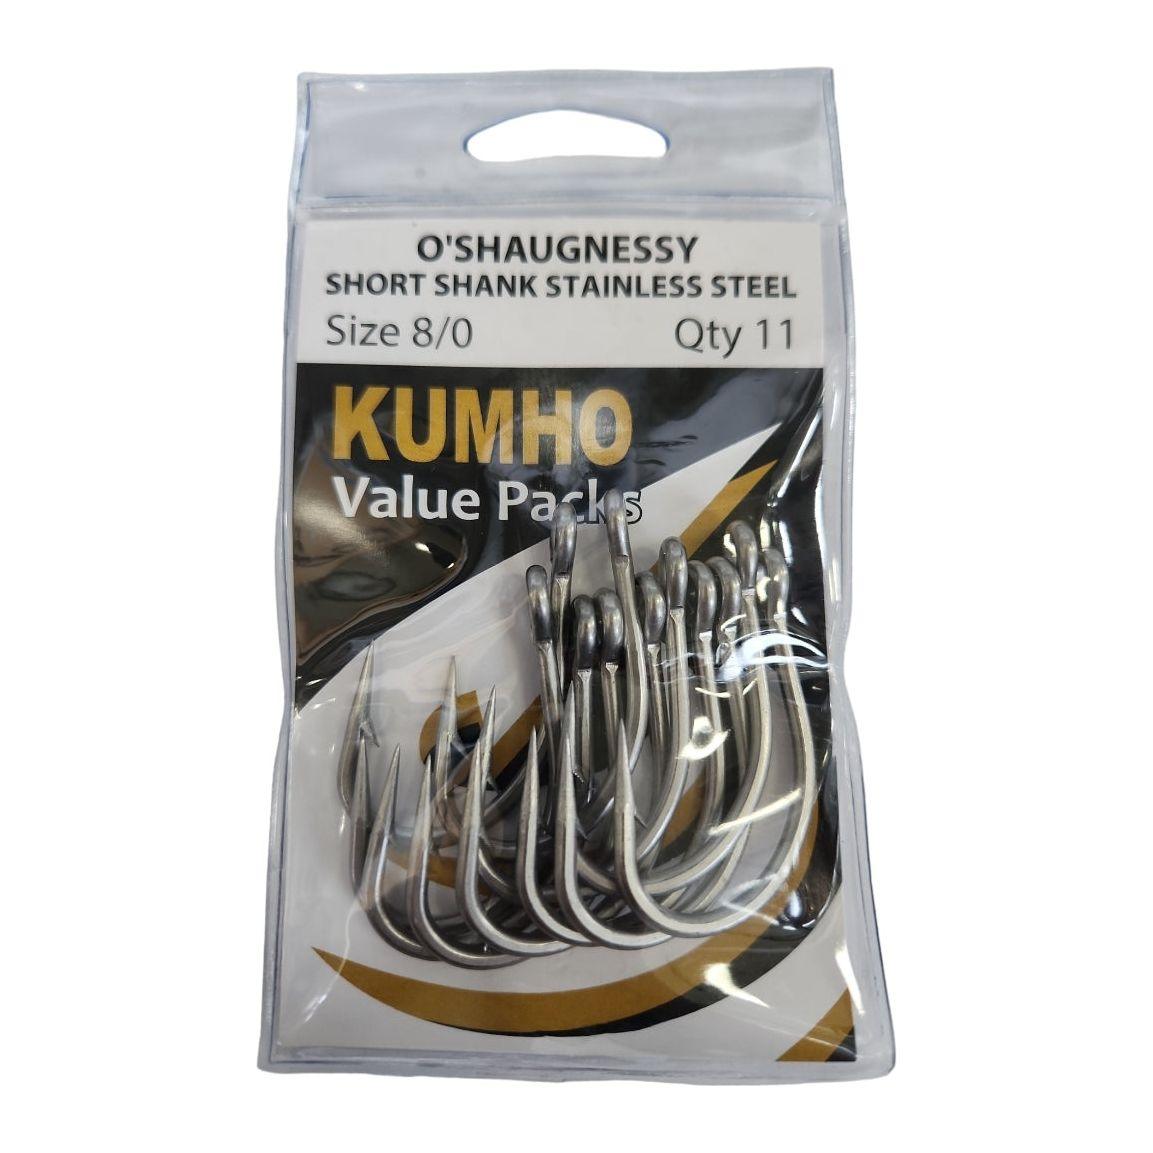 Kumho Stainless Steel Short Shank O'Shaughnessy Hooks Value Pack